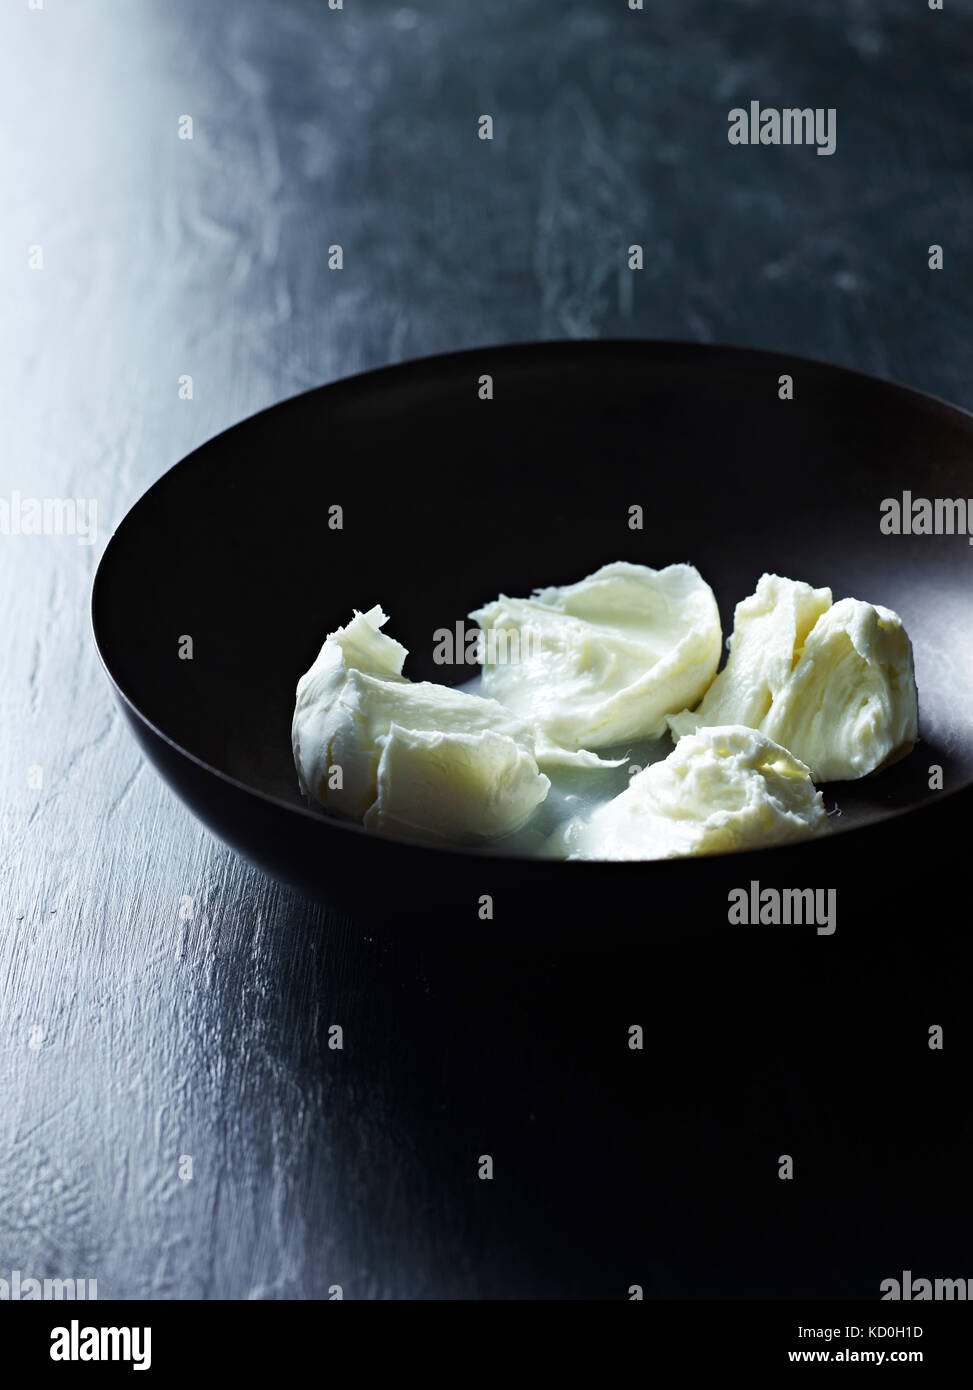 Strappato mozzarella di bufala nella ciotola, close-up Foto Stock